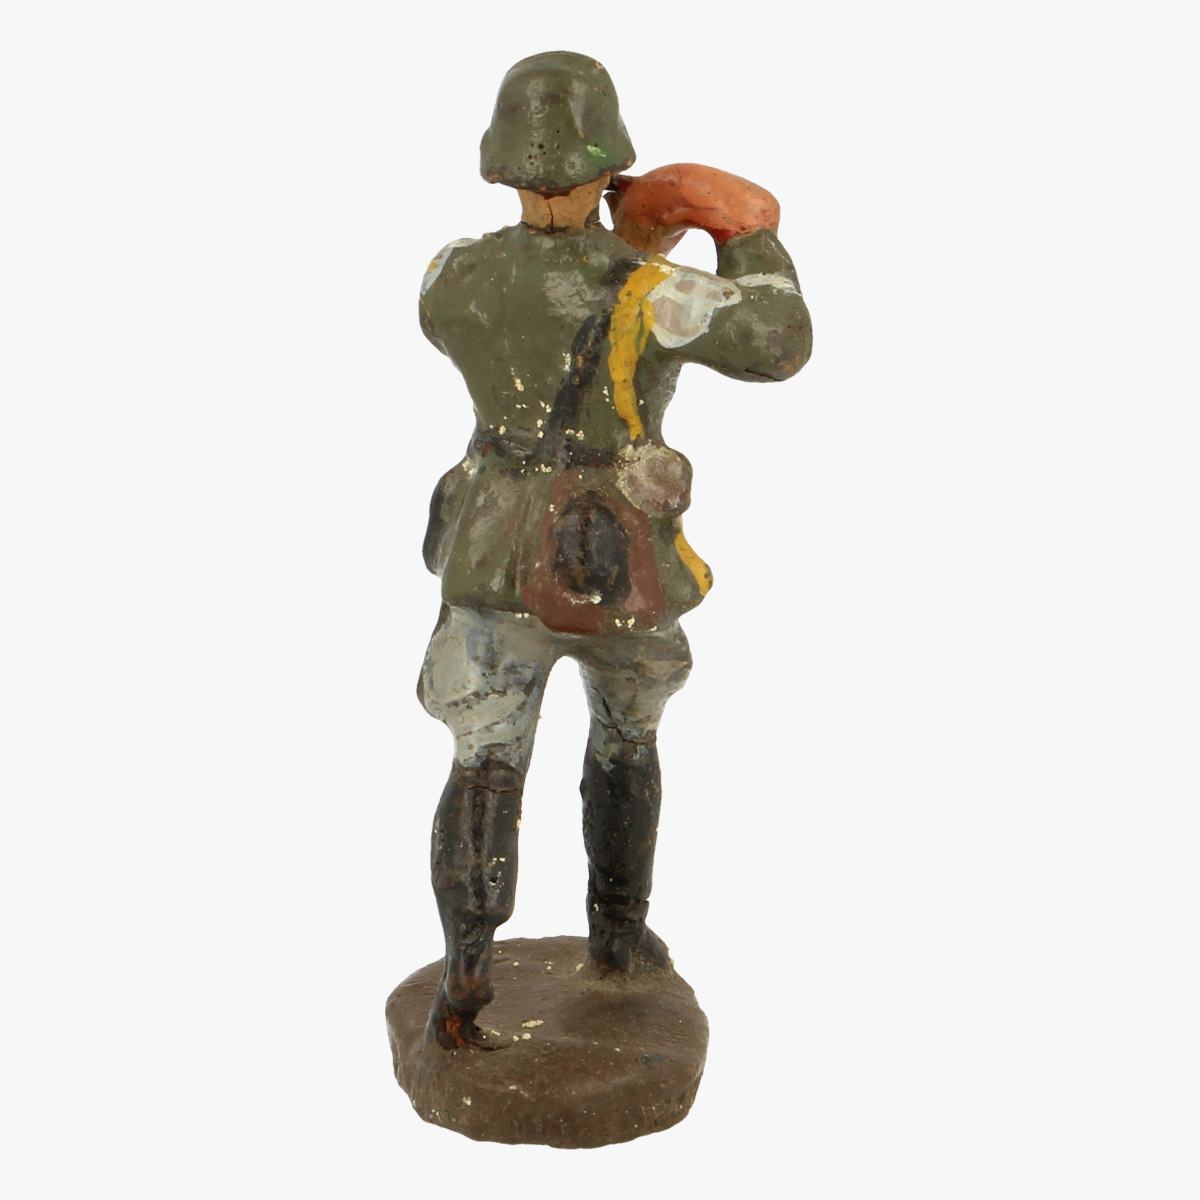 Afbeeldingen van elastolin soldaatje elastolin Germany